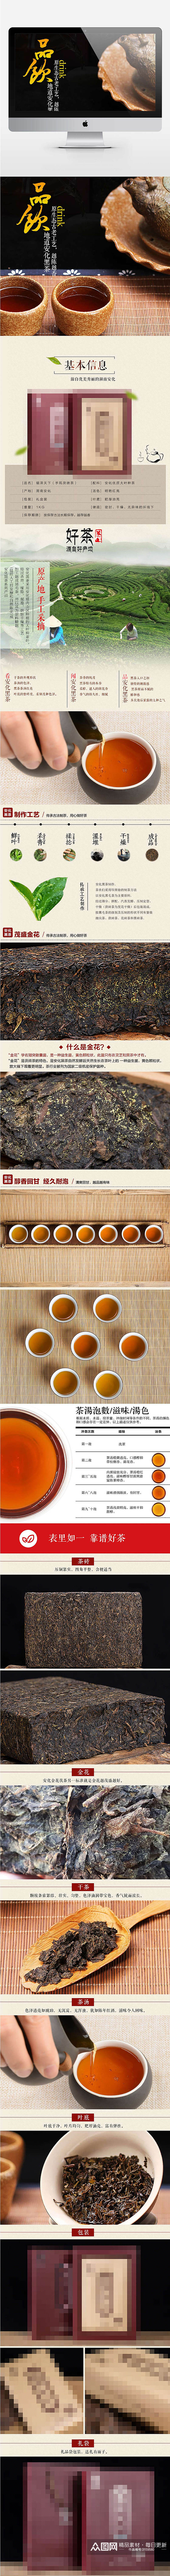 黑茶详情页茶叶食品素材